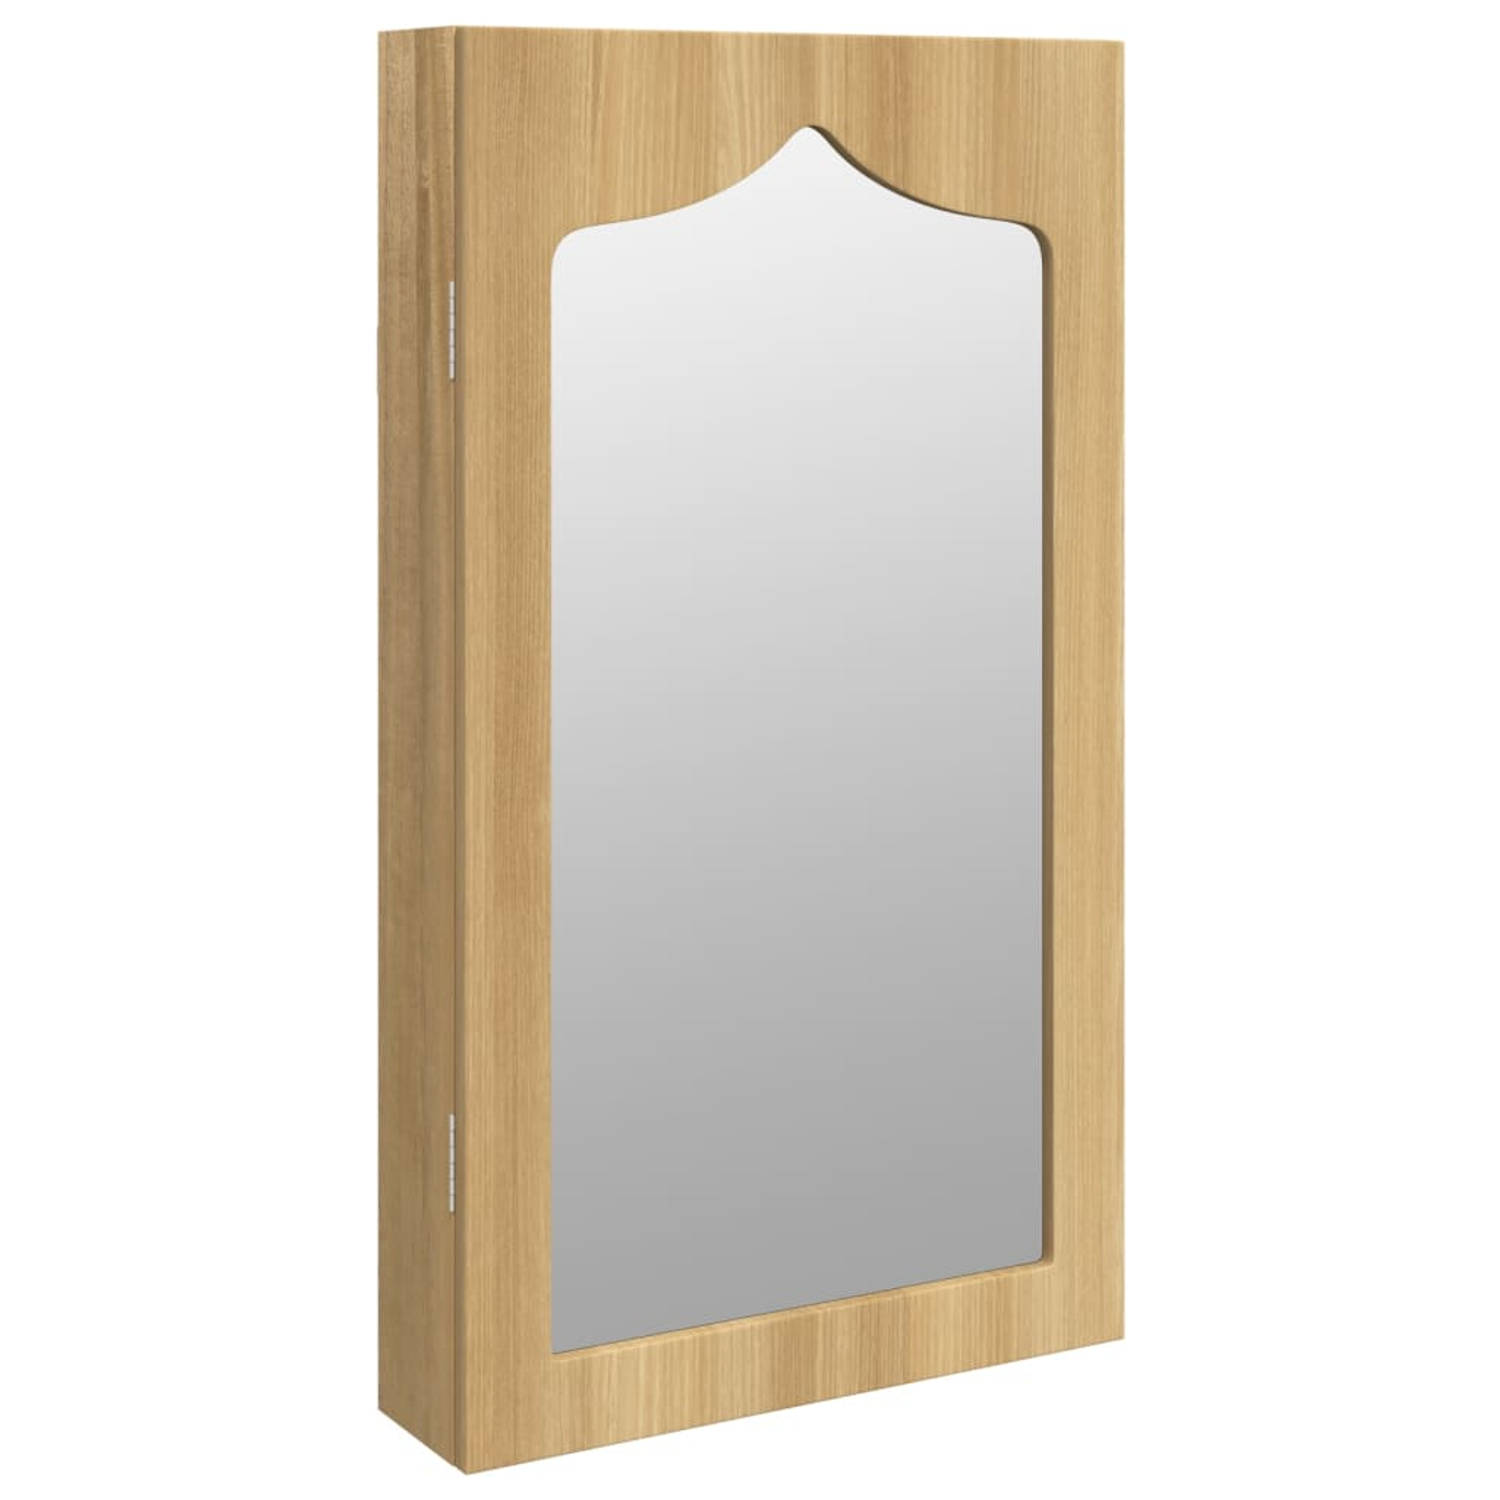 The Living Store Sieradenkast met spiegel - Bewerkt hout - 37.5 x 10 x 67 cm - Afsluitbaar